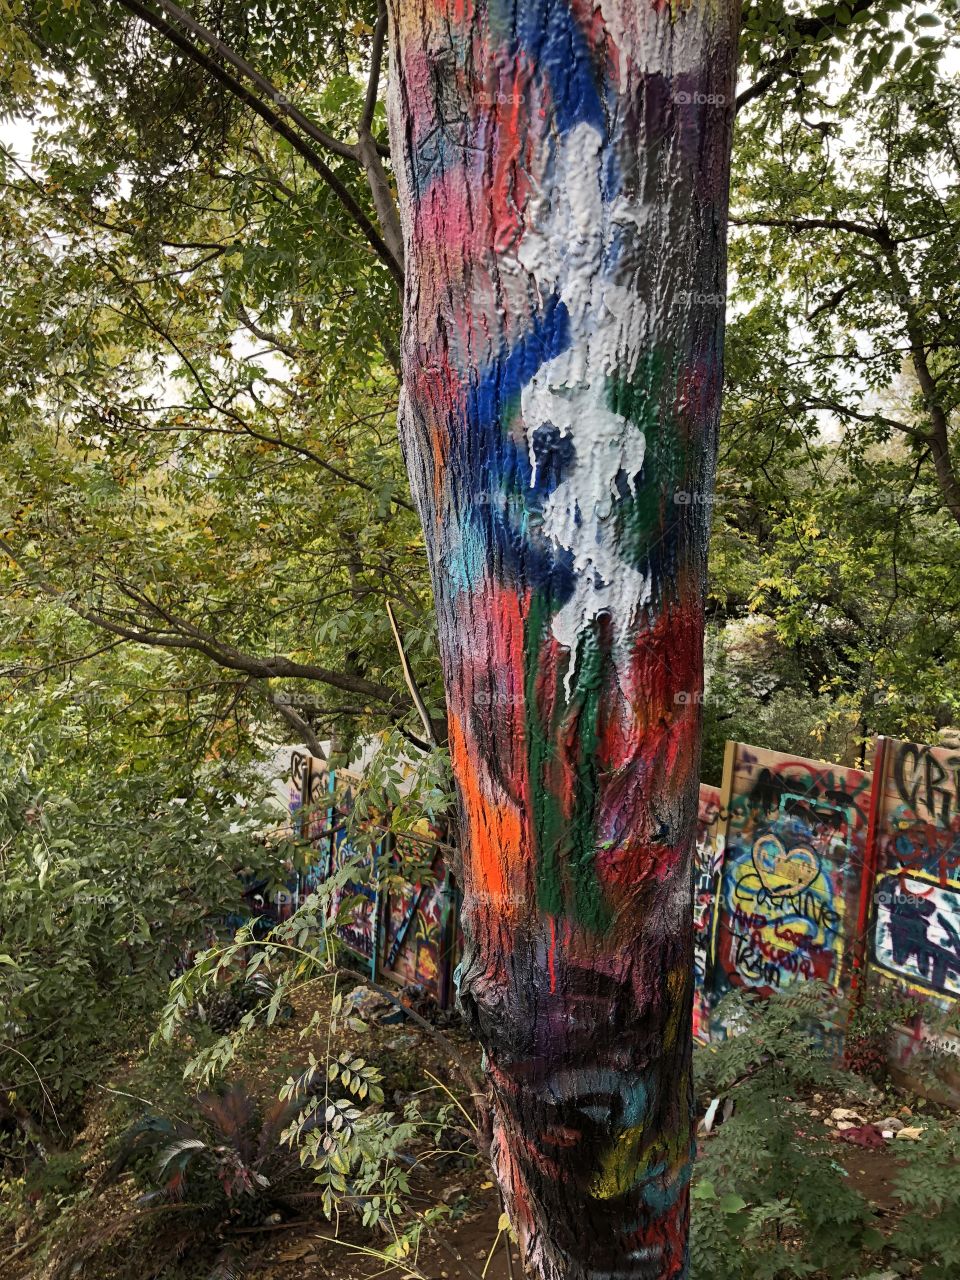 Who graffitis a tree?? 